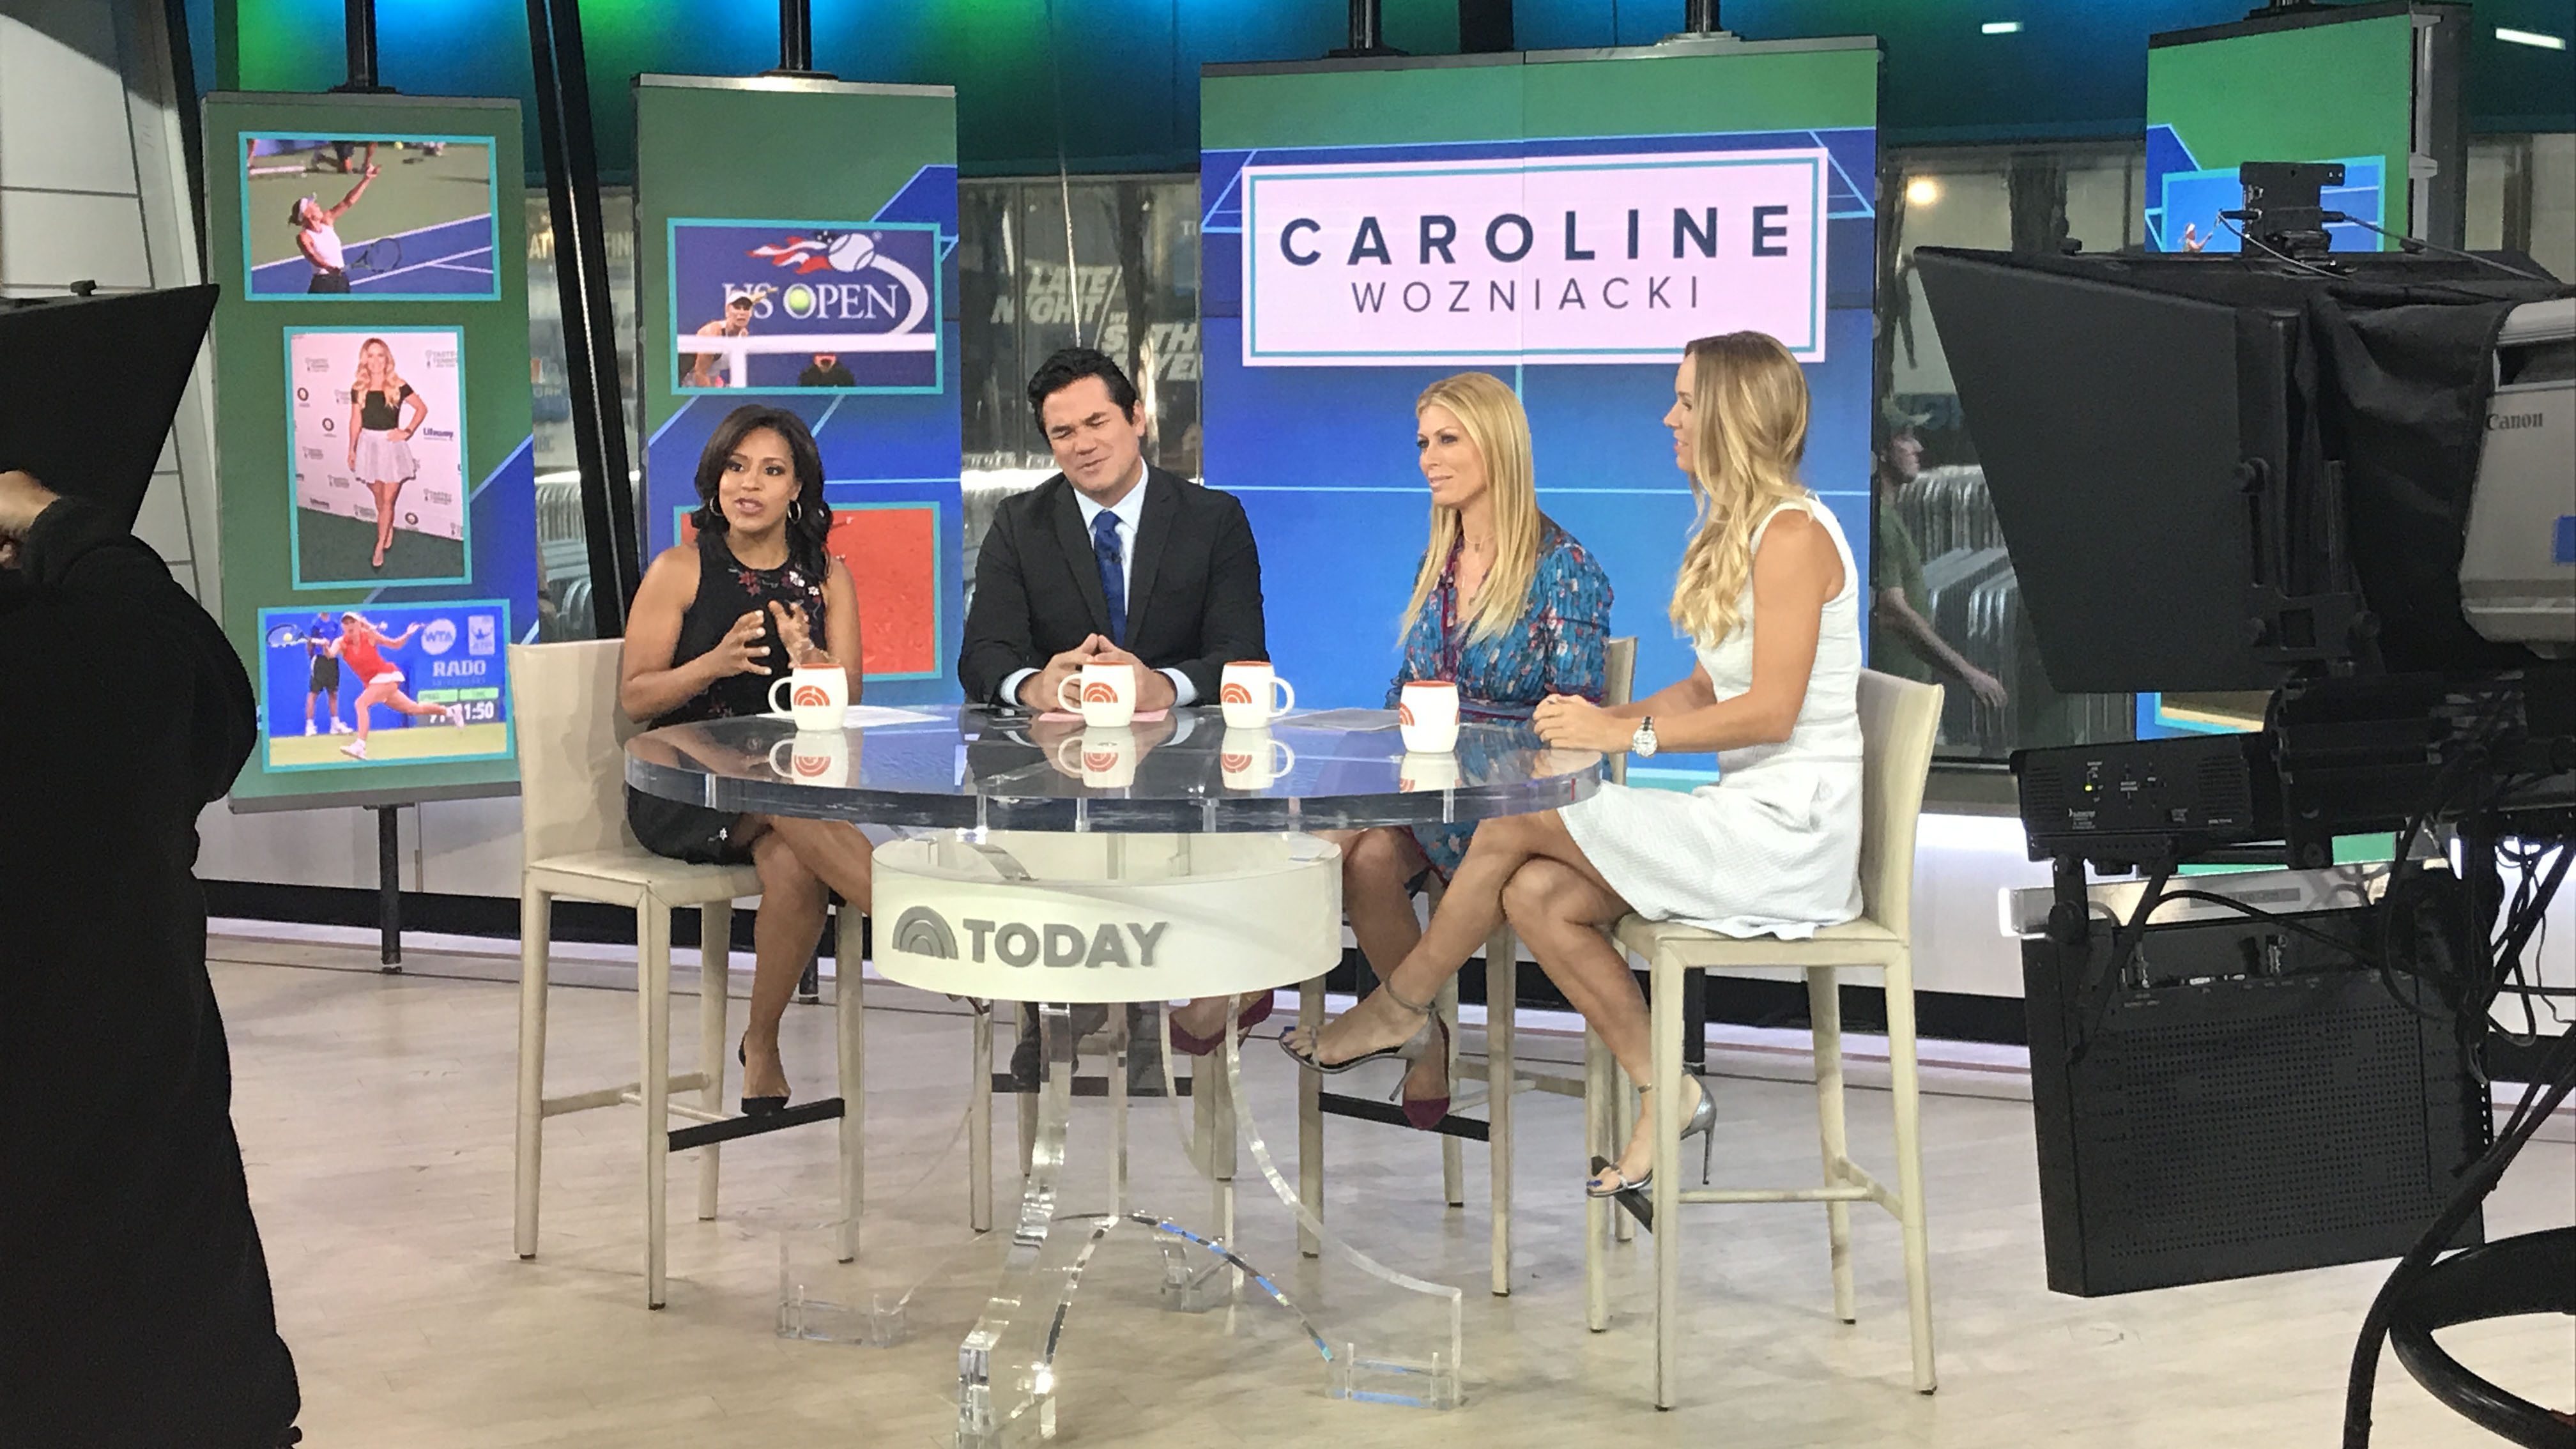 Caroline Wozniacki Appearance on the TODAY Show